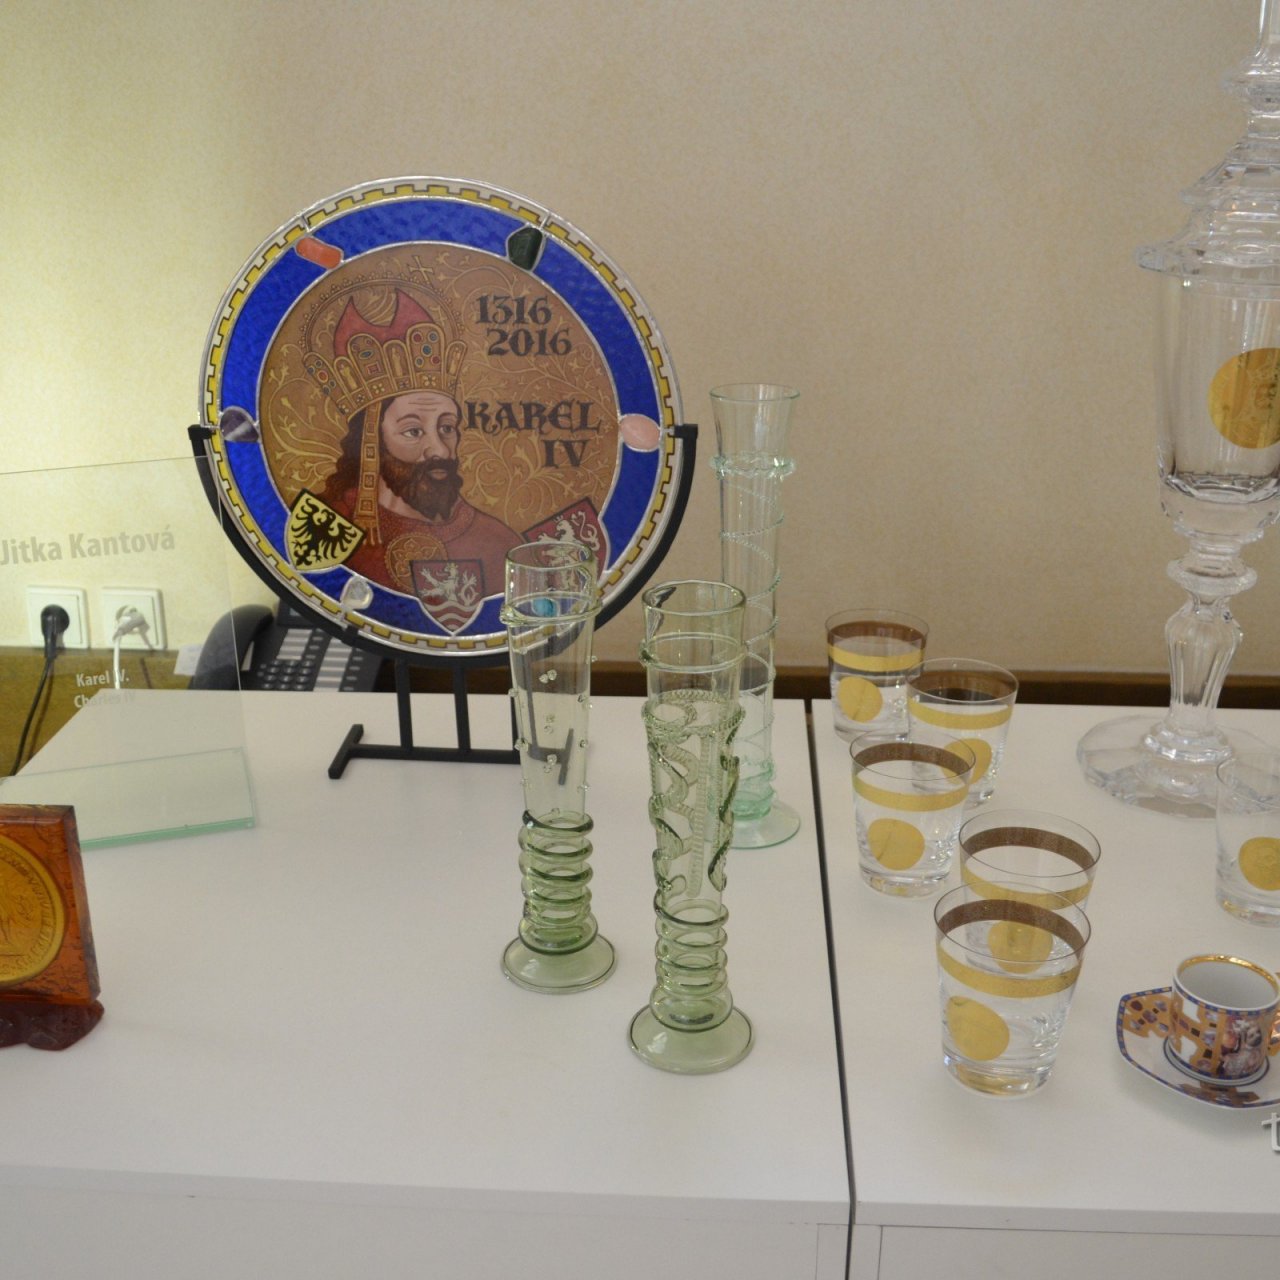 Praha - výstava skla a sklenenej bižutérie v Toskanskom paláci